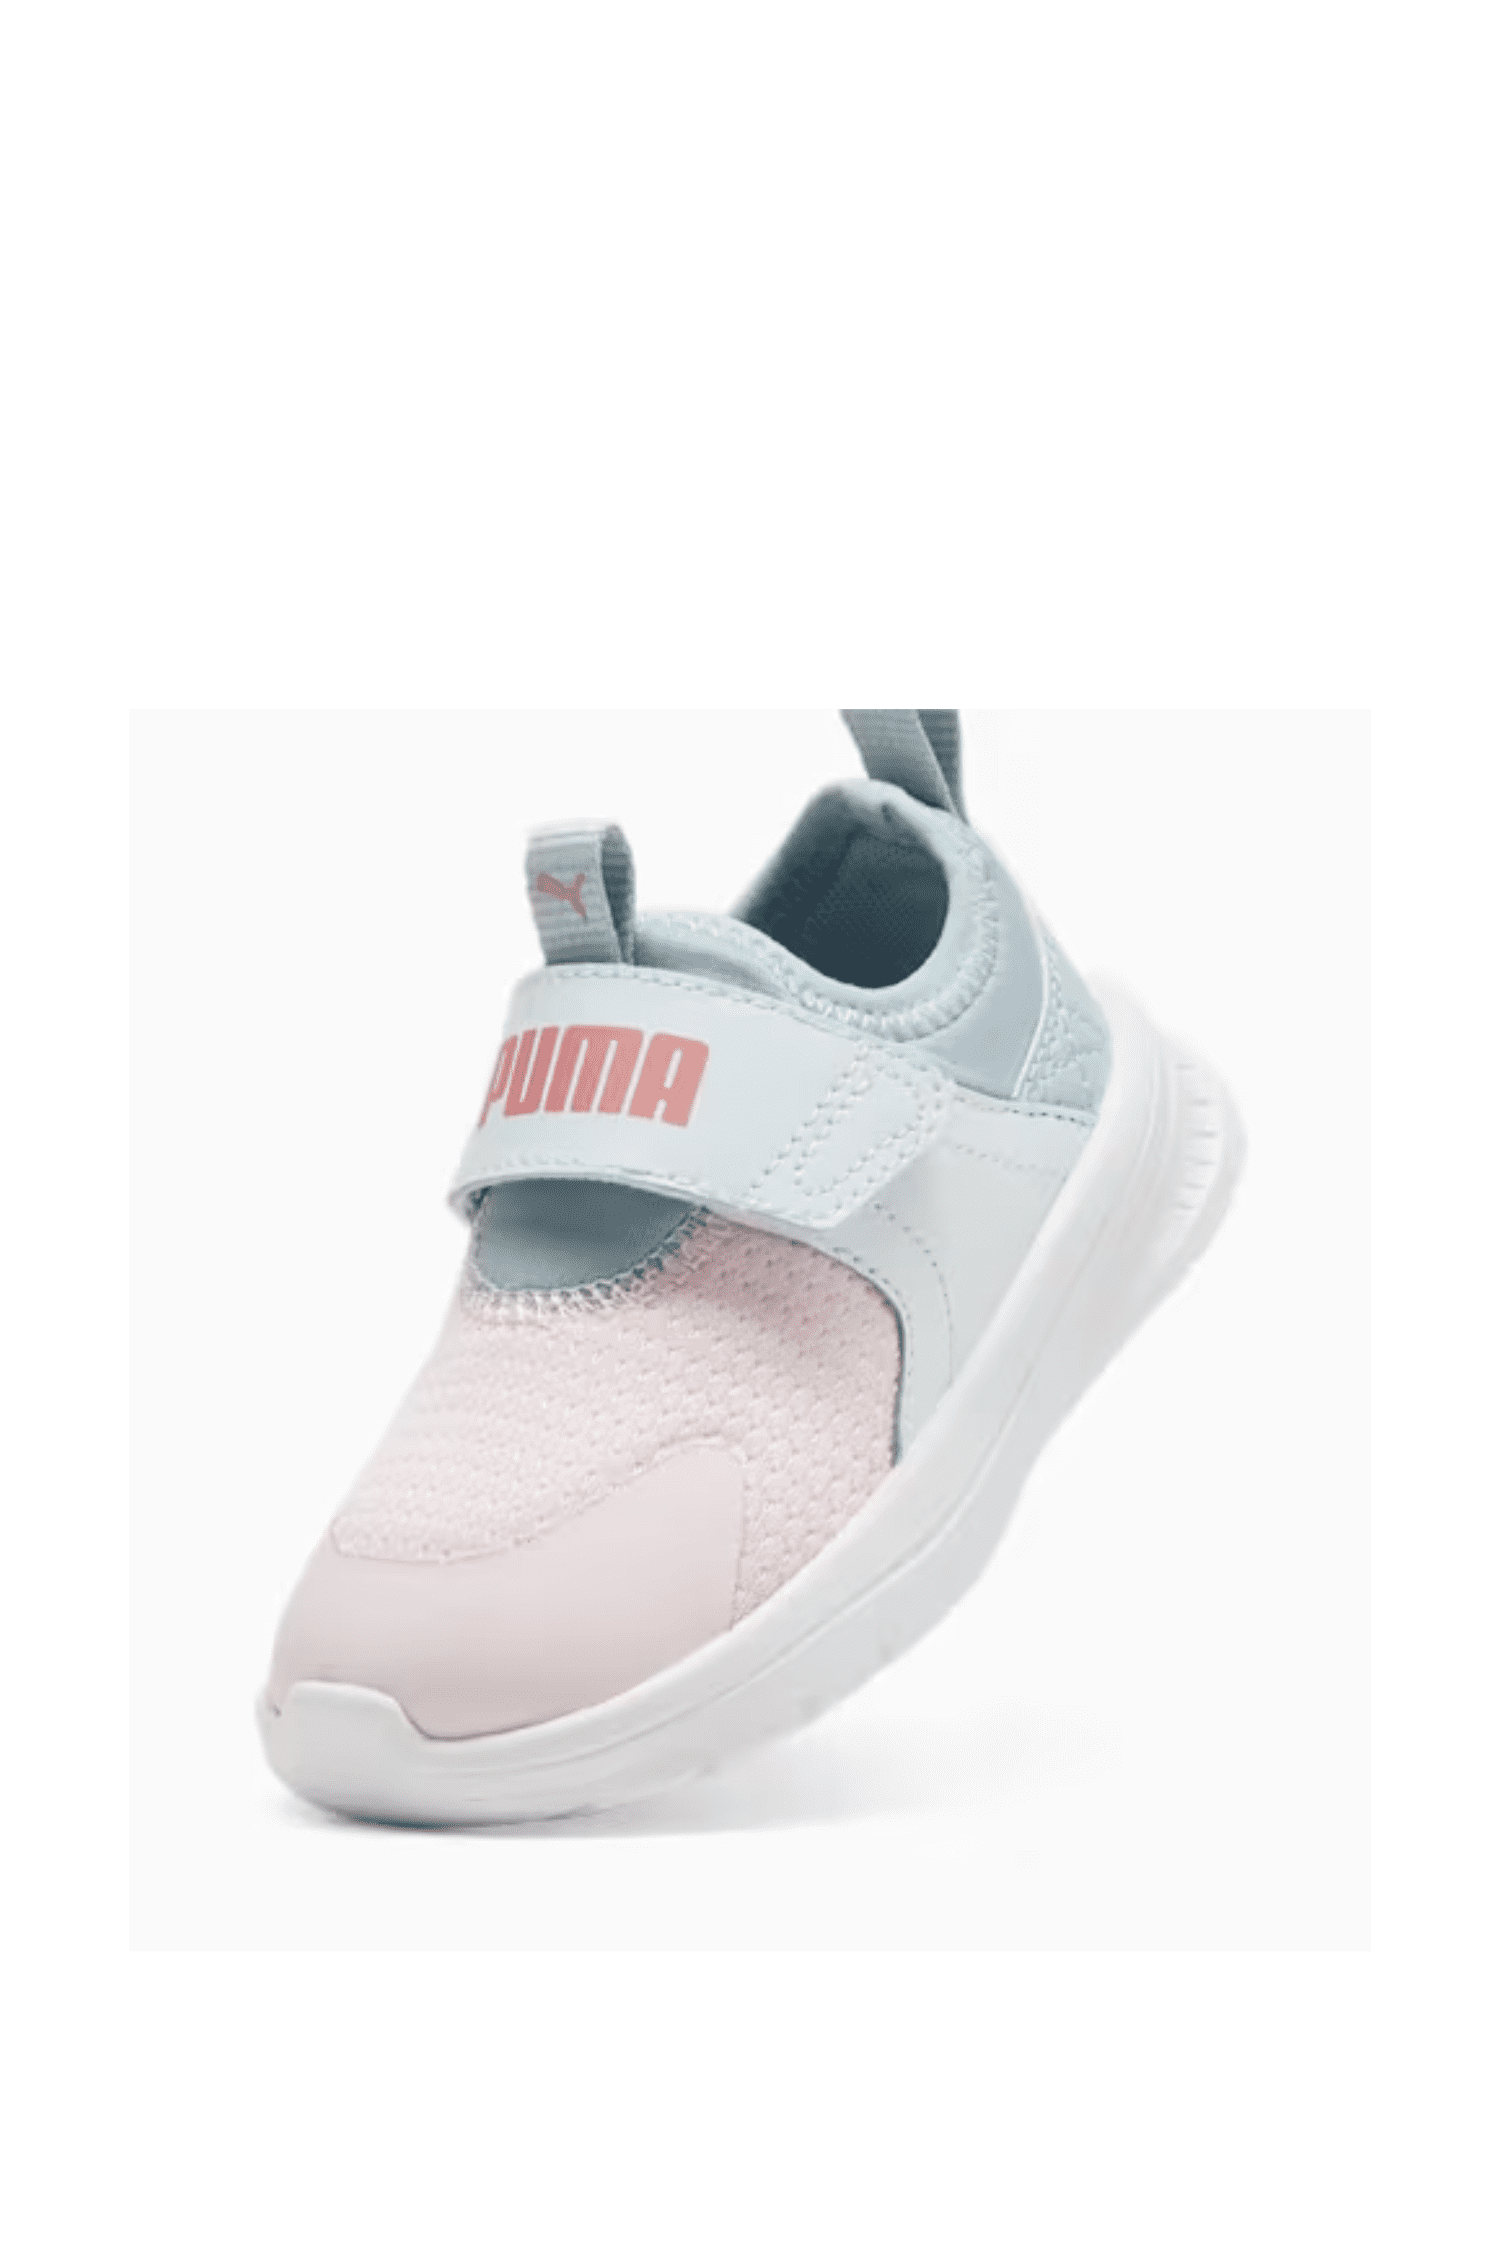 נעלי פומה תינוקות Puma Evolve Slip On Inf בצבע ורוד-Puma-20-נאקו